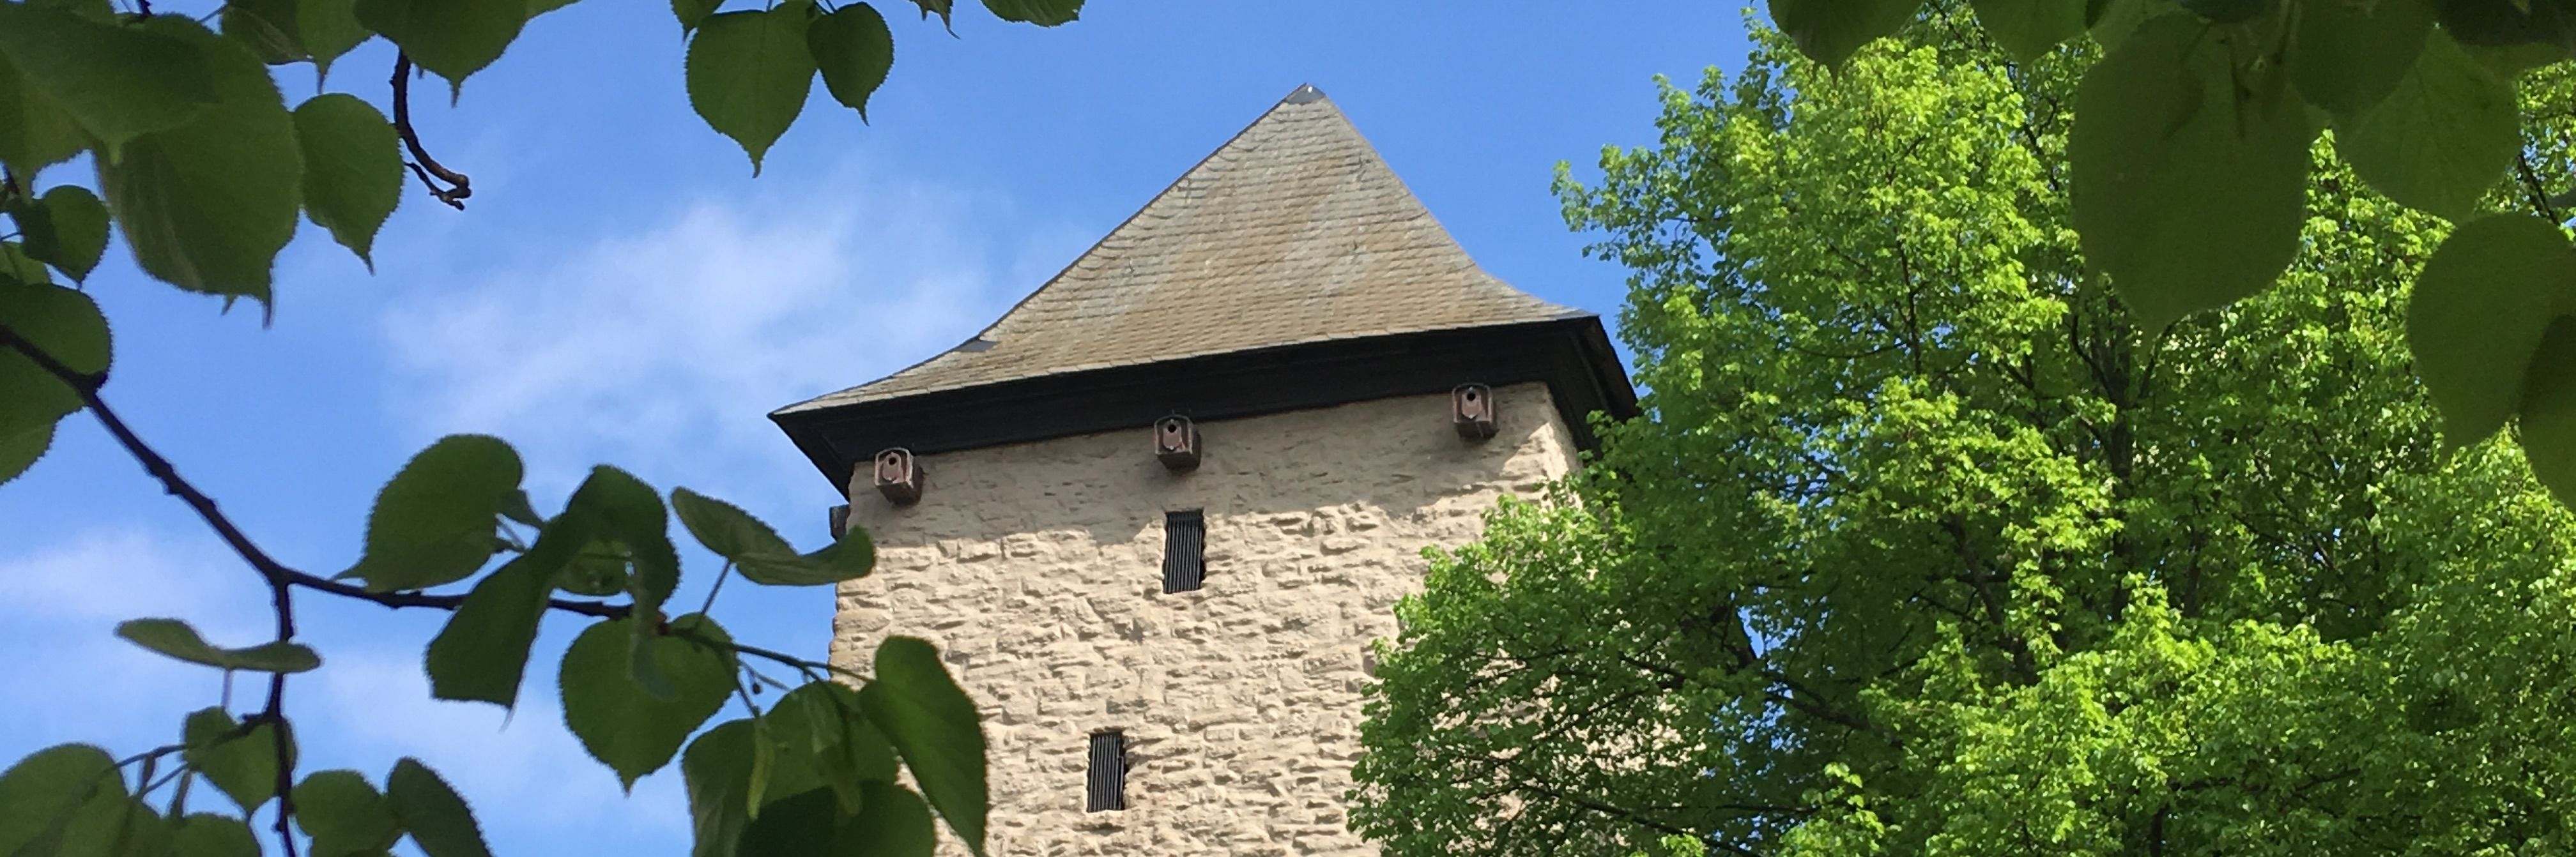 Ein Foto vom Poenigeturm, ein heller geschlämmter viereckiger Steinturm mit dunklem Spitzdach. Abgebildet ist die obere Hälfte des Turmes, an der rechten Seite wird der Turm durch einen Kastanienbaum in vollem Blattgrün verdeckt.